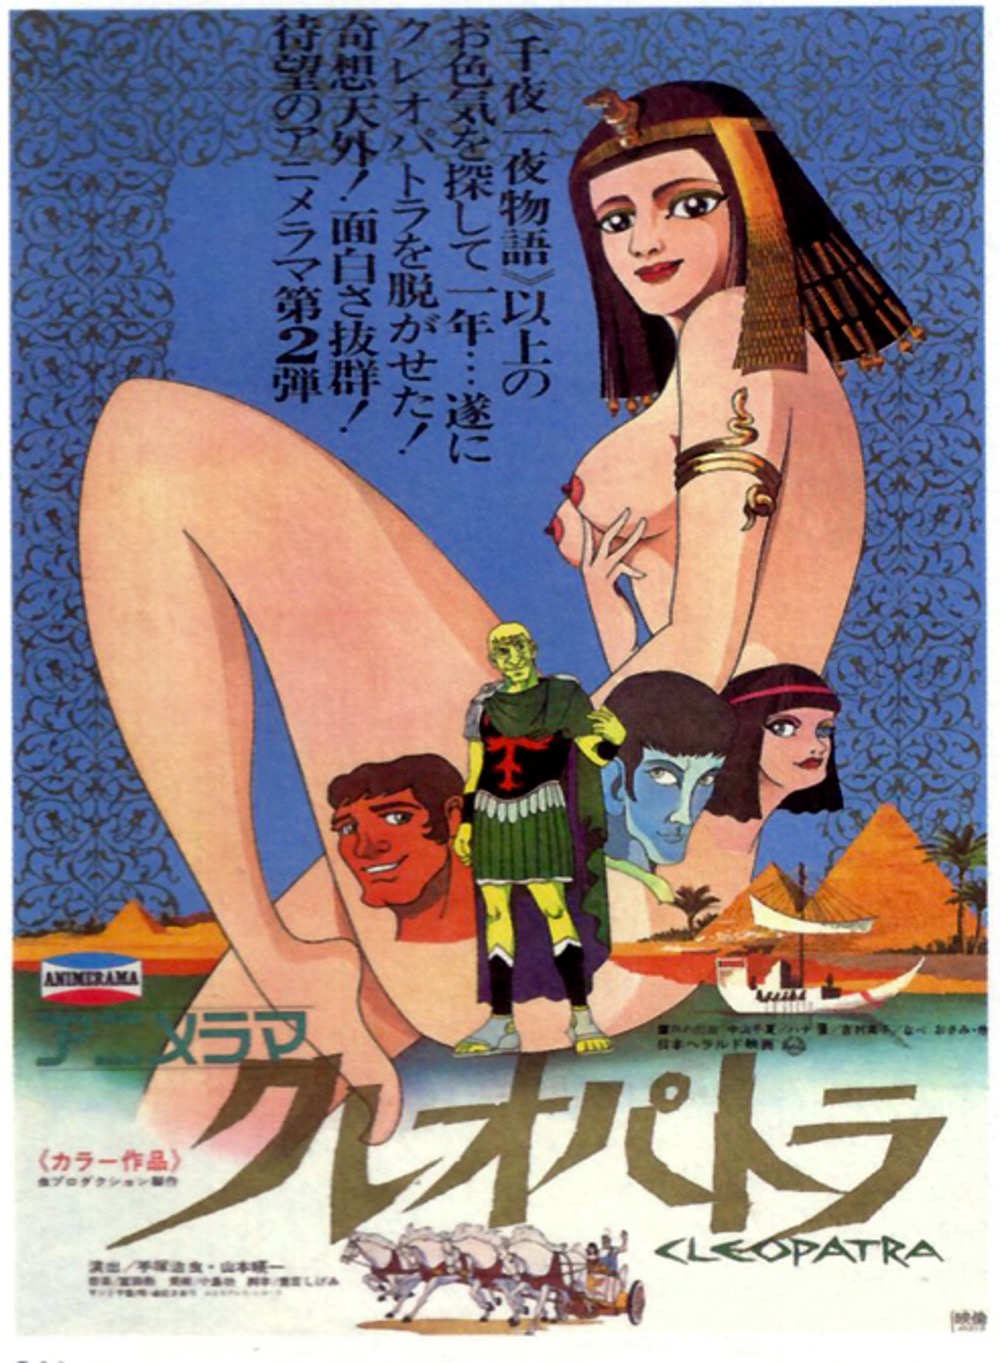 Cleopatra queen of sex poster nsfw.jpg